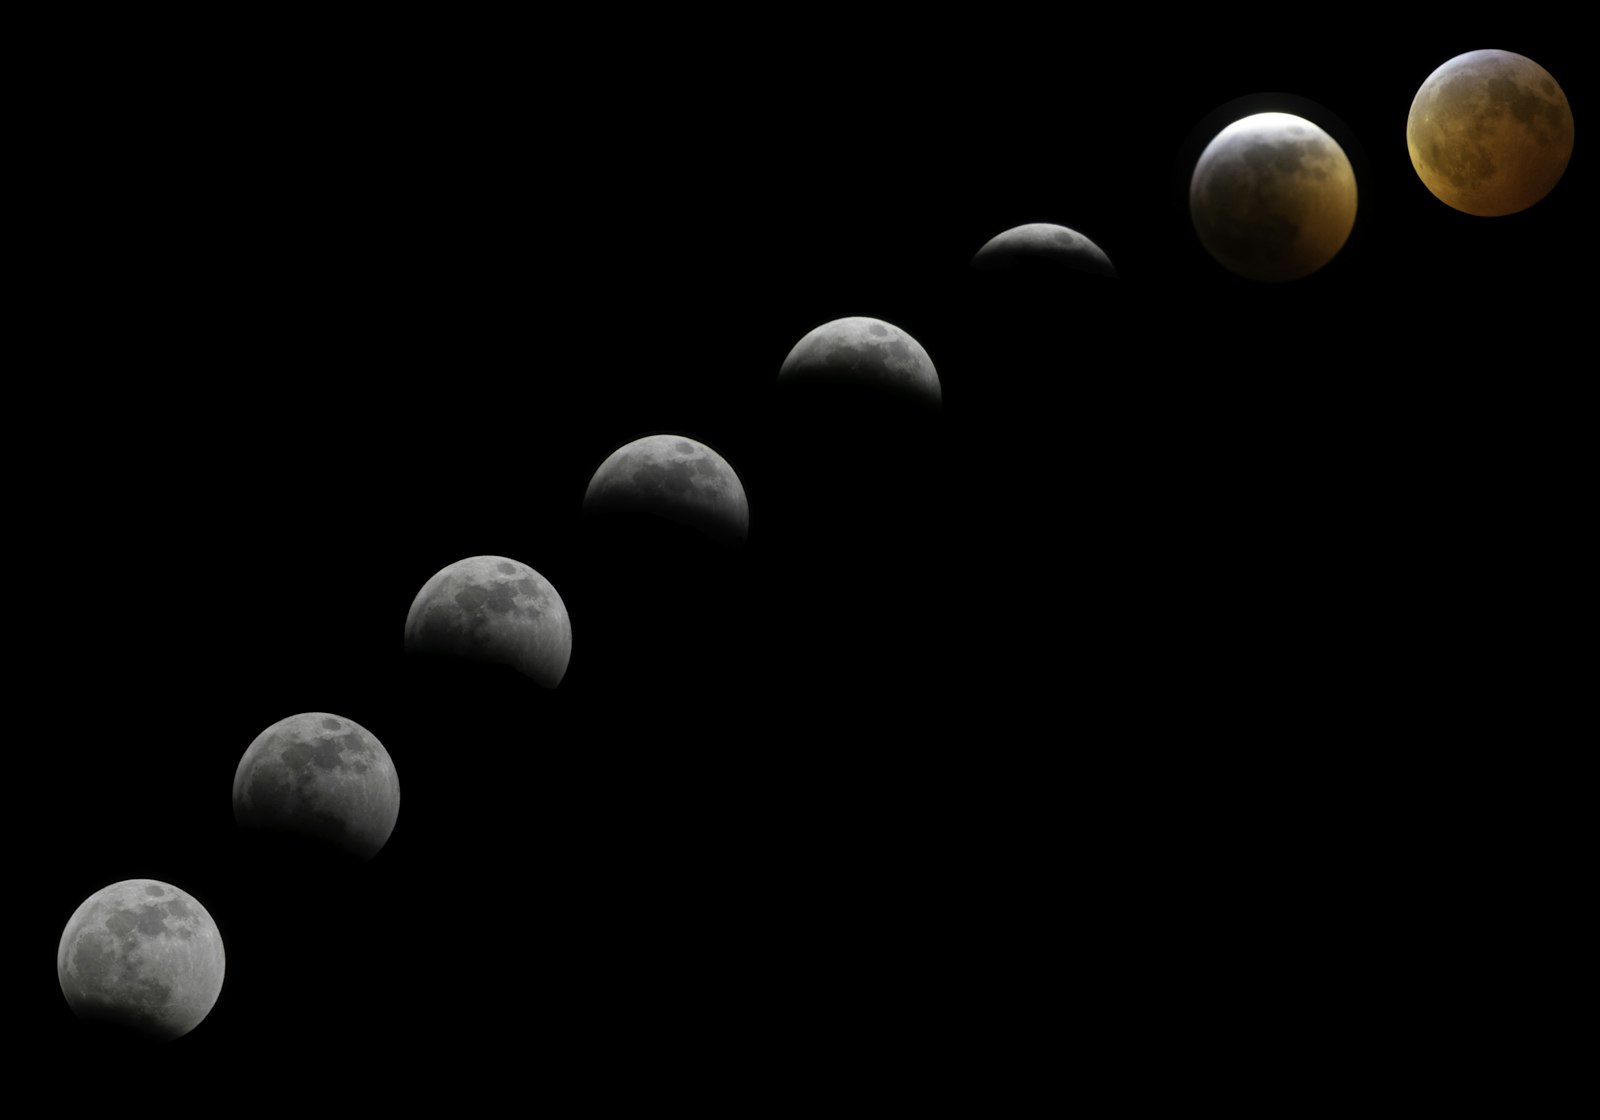 Nikon D3300 + Nikon AF-S Nikkor 70-300mm F4.5-5.6G VR sample photo. Lunar eclipse photography